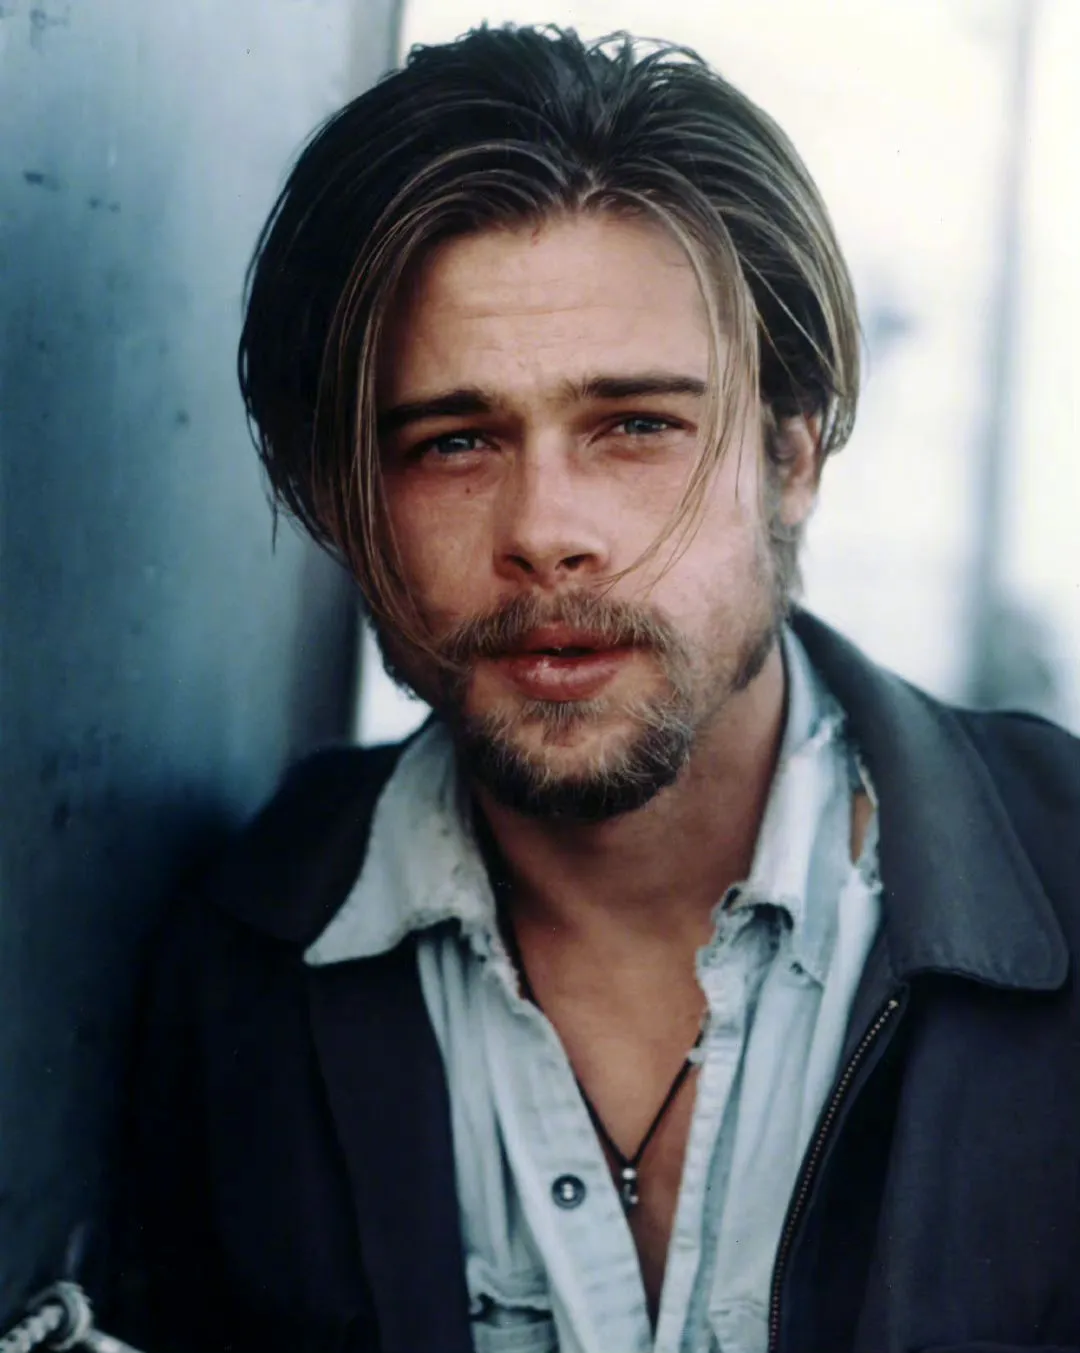 Old Photo Album: Unshaven Brad Pitt | FMV6